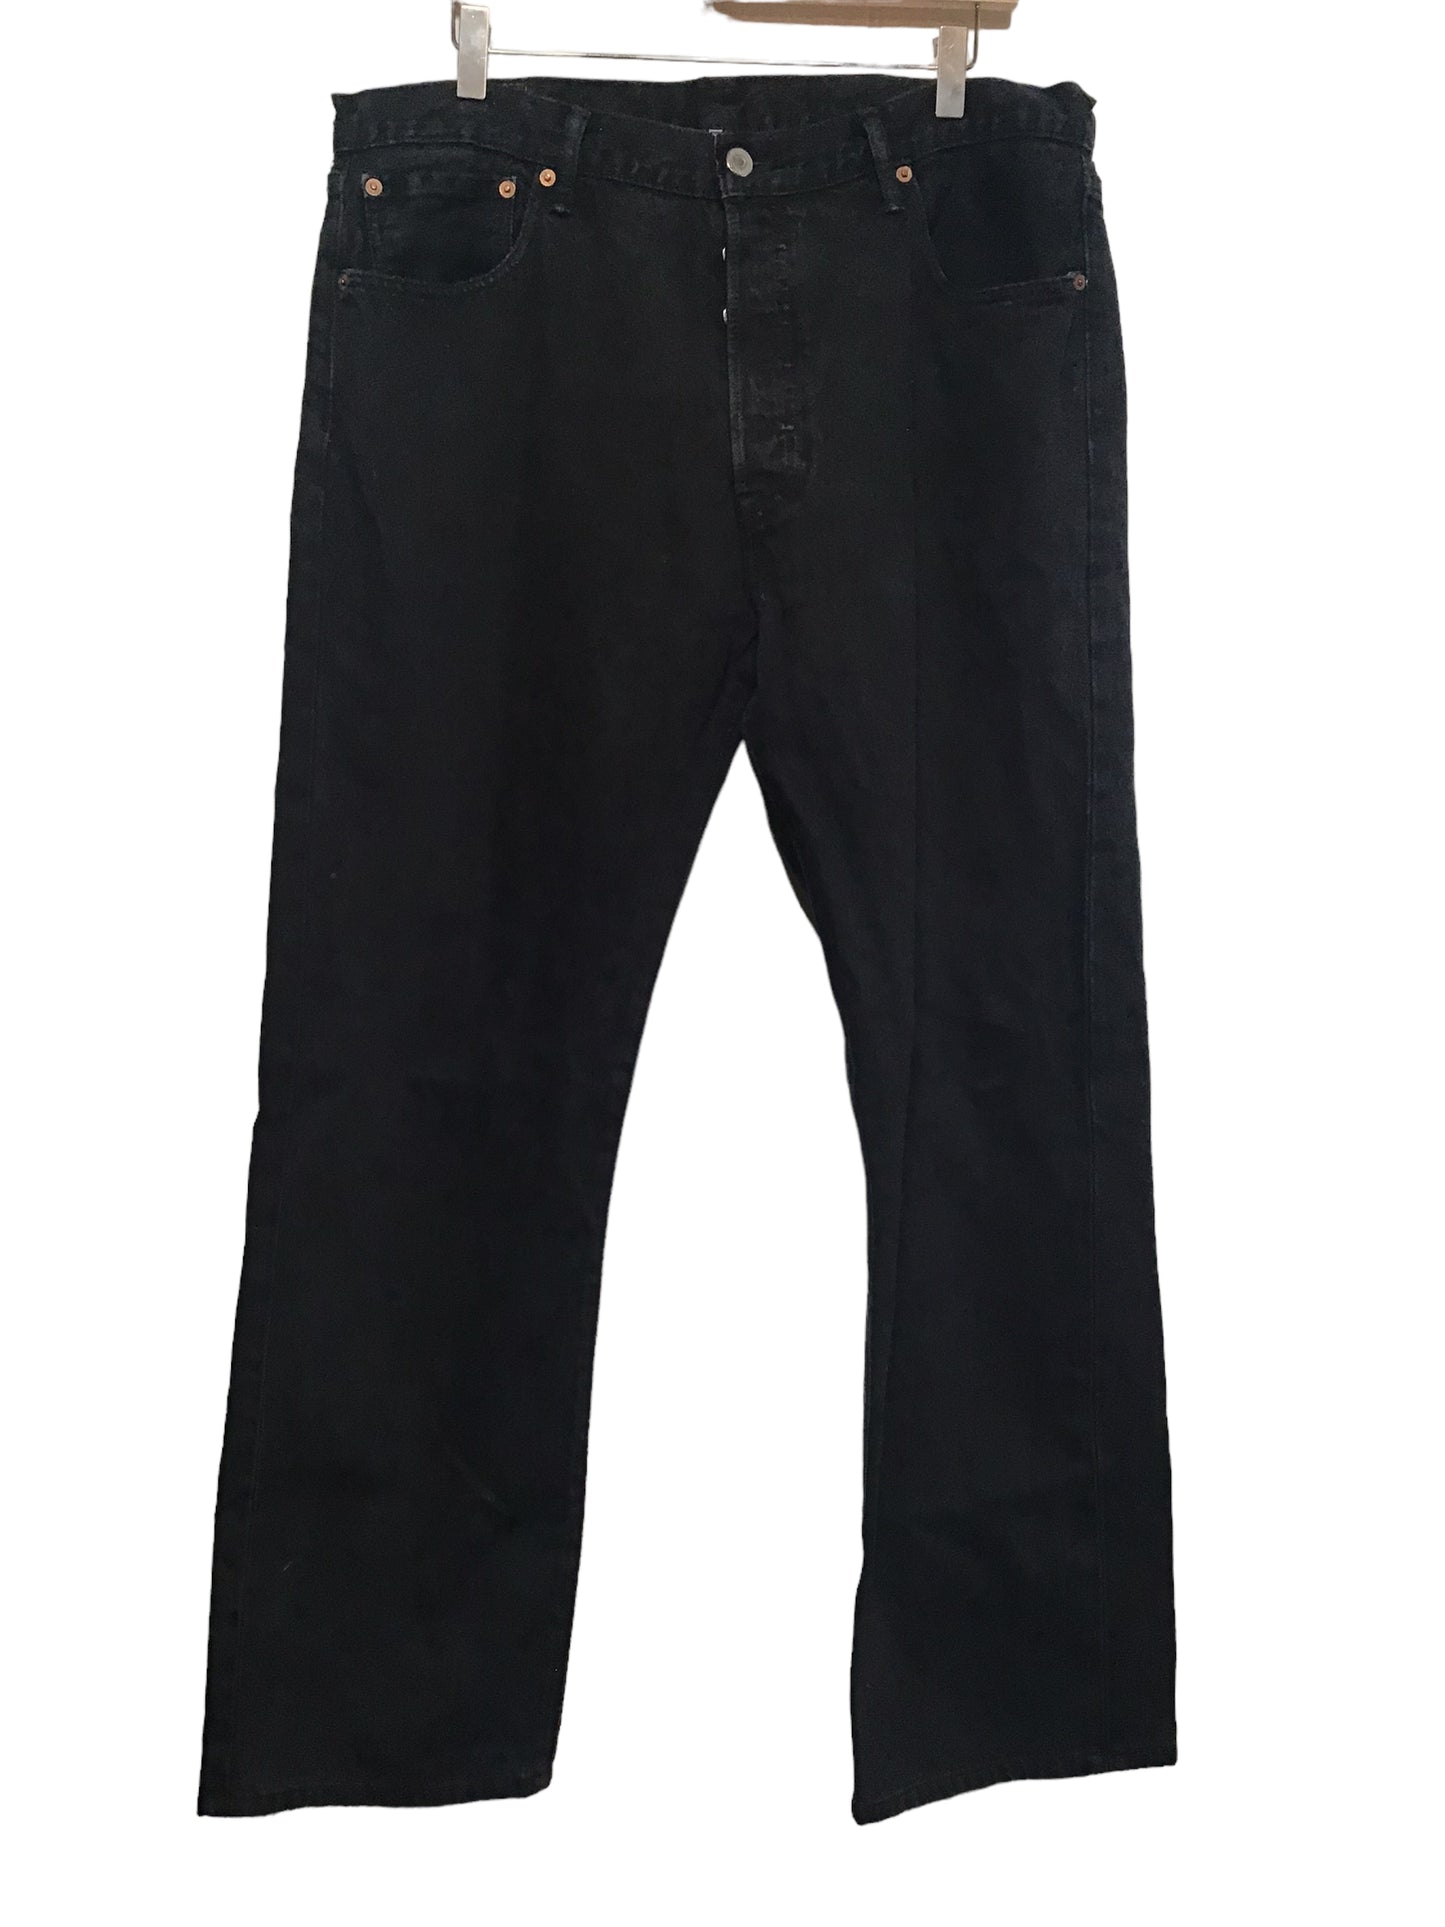 Levi 501 Jeans (36x30)